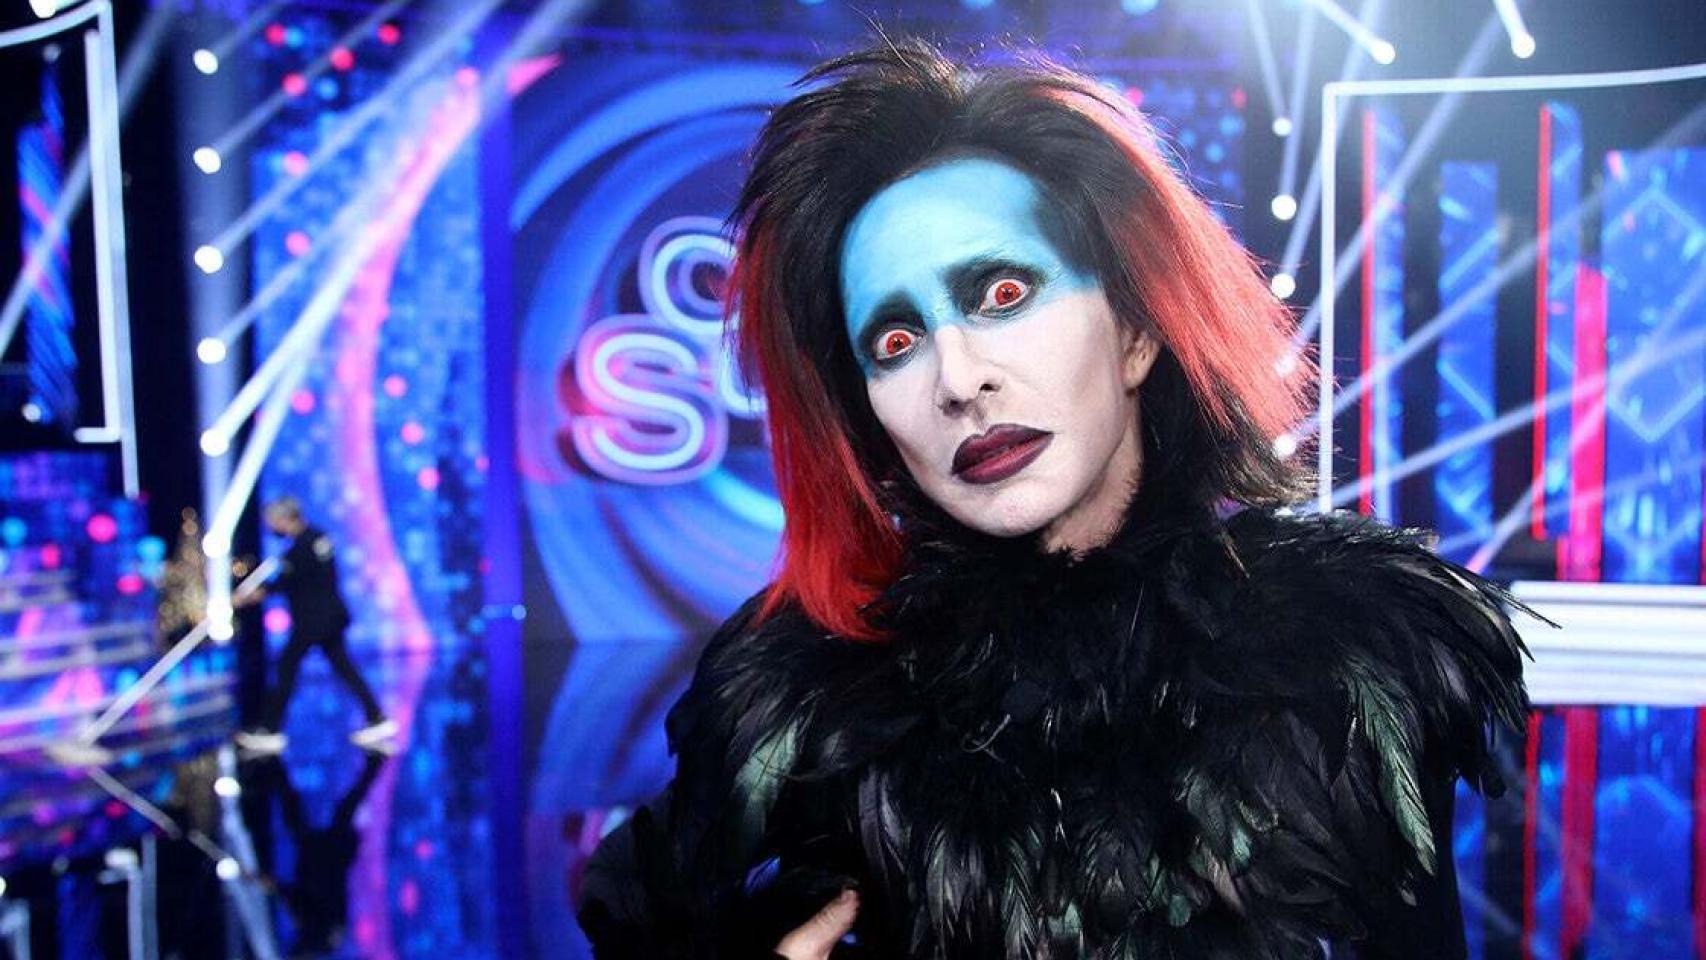 La increíble transformación de Lydia Bosch en Marilyn Manson deja atónita a la audiencia